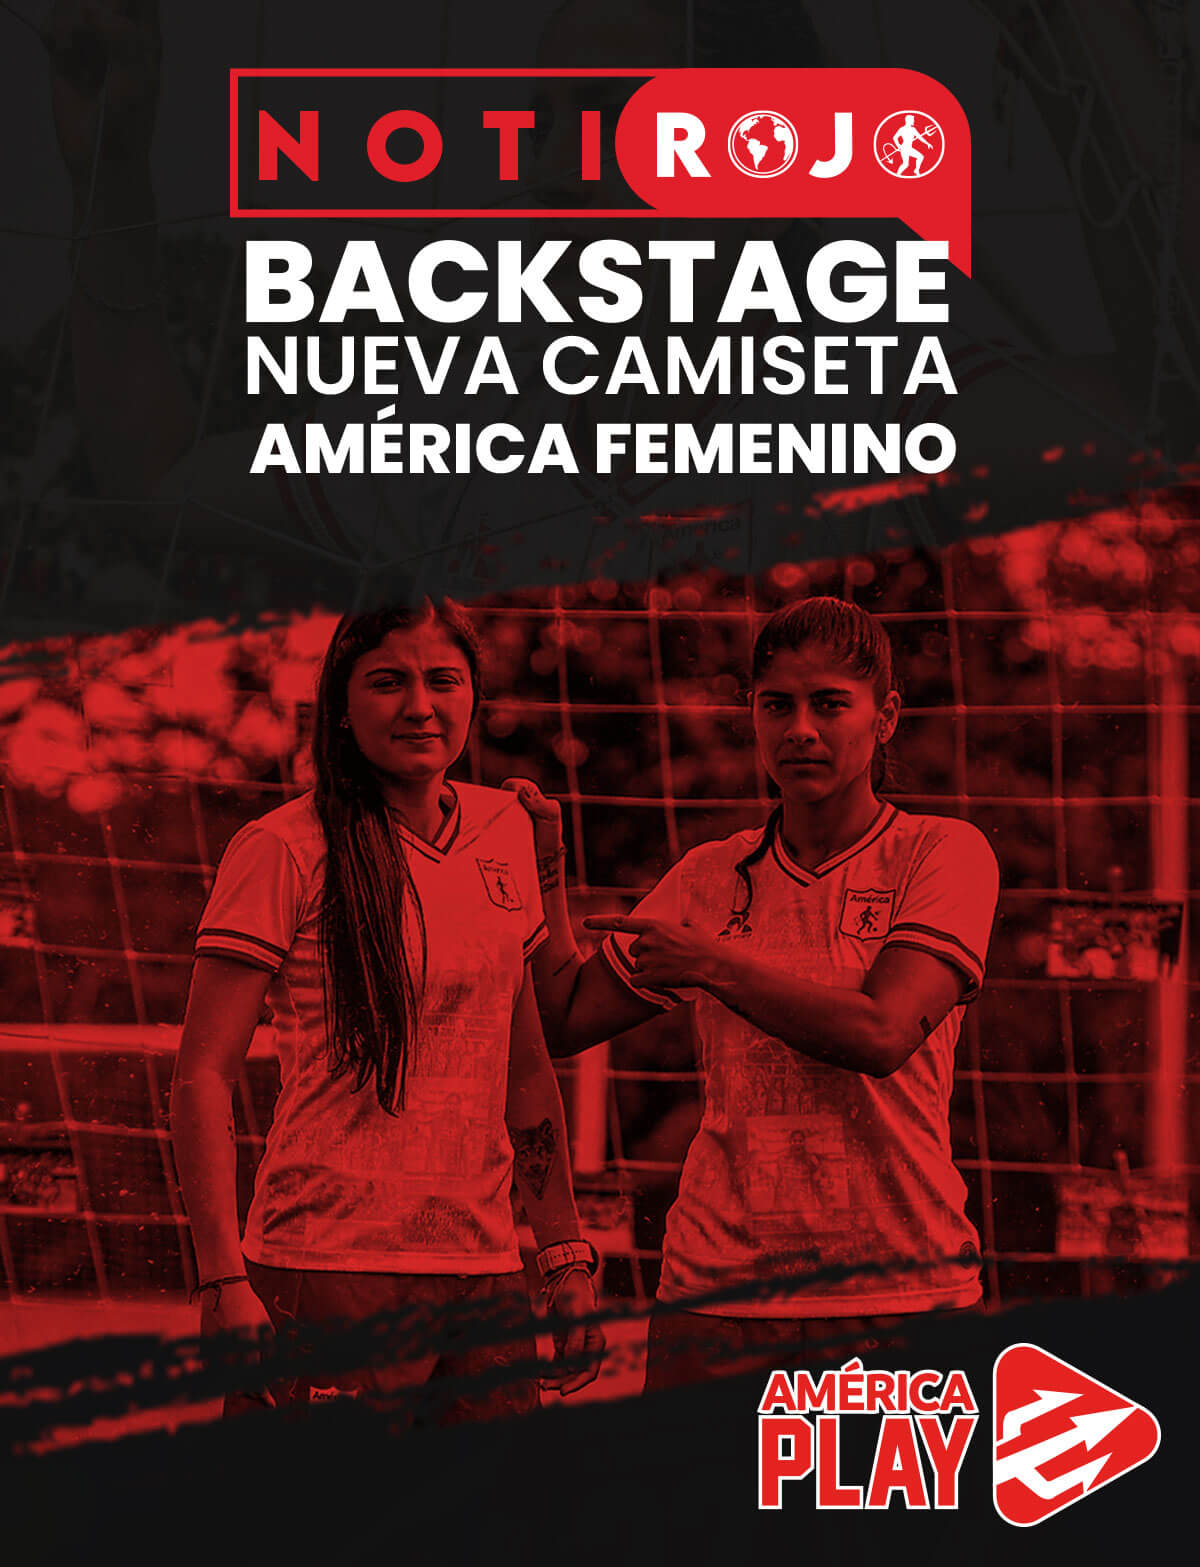 Backstage nueva camiseta del América Femenino